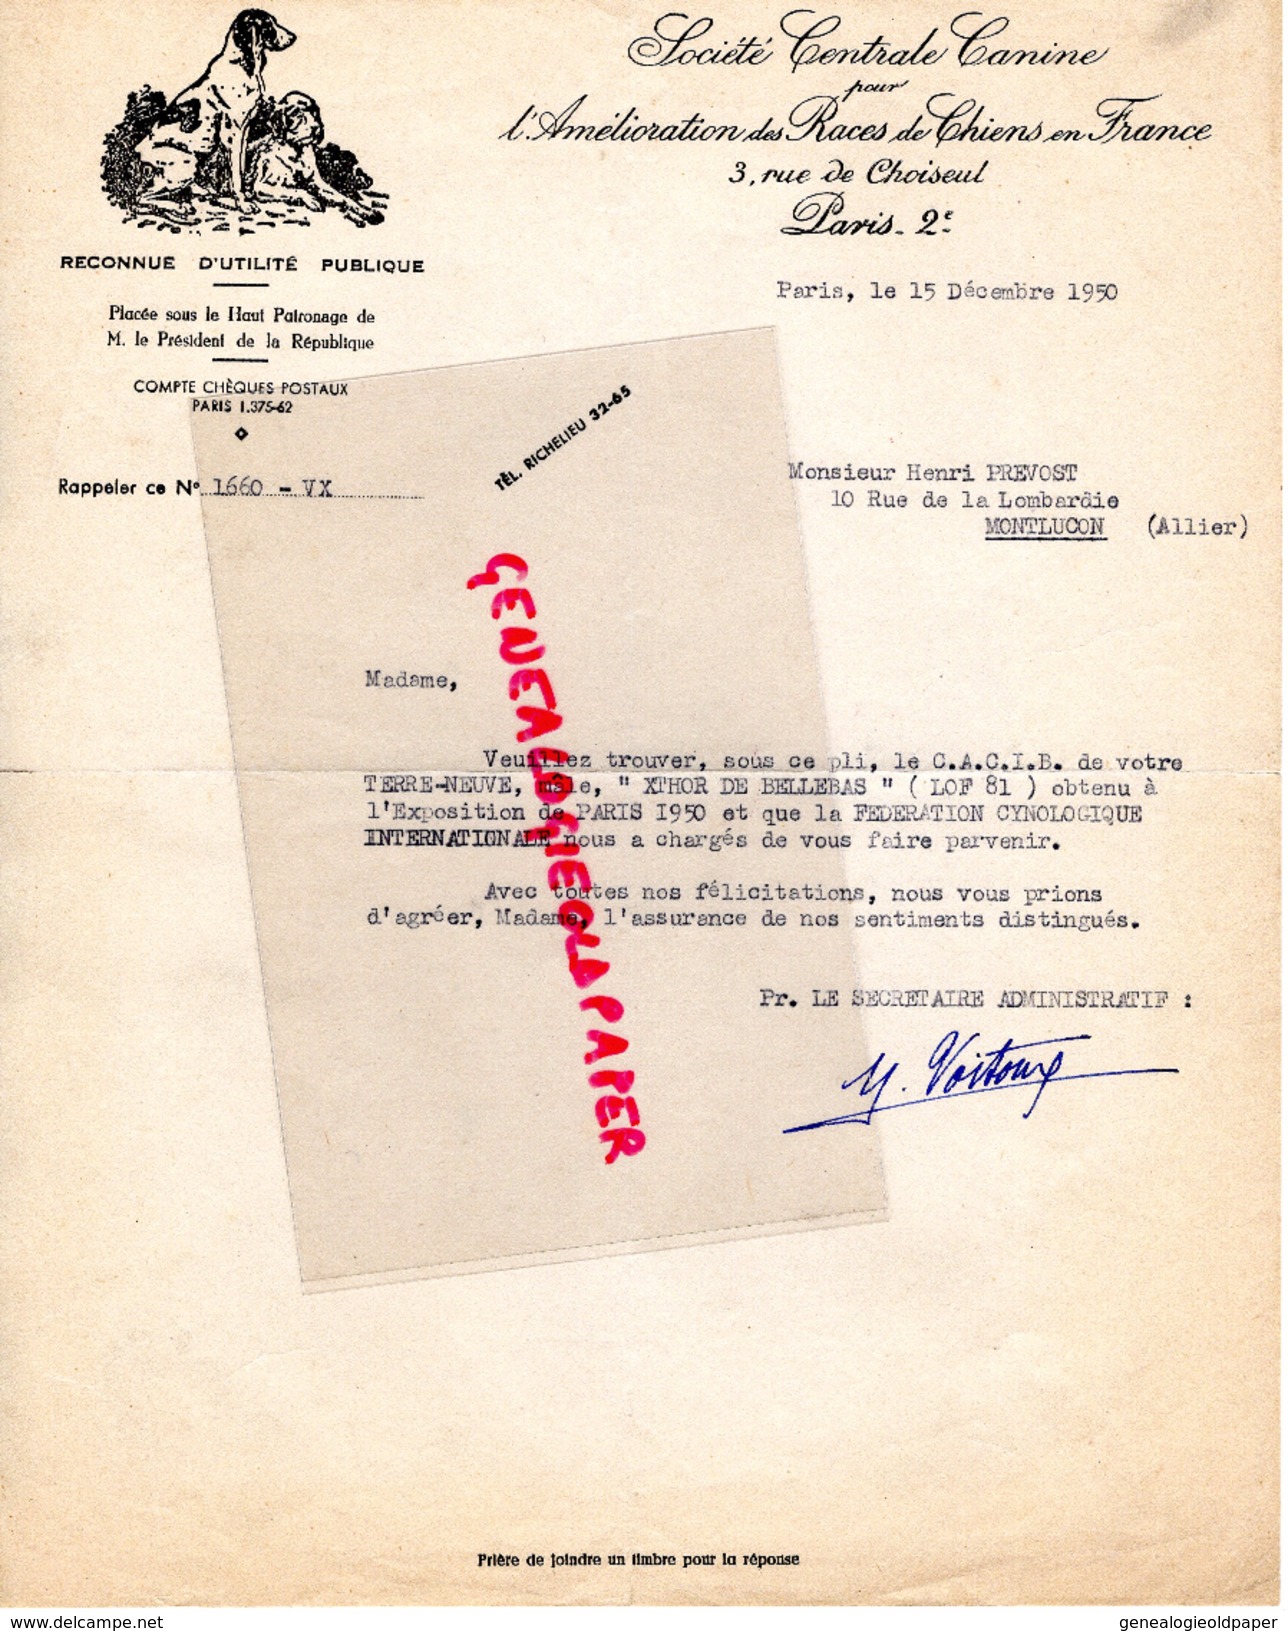 75- PARIS-  SOCIETE CENTRALE CANINE AMELIORATION RACES CHIENS - CHIEN DOG- 3 RUE CHOISEUL- HENRI PREVOST MONTLUCON- 1950 - Historical Documents